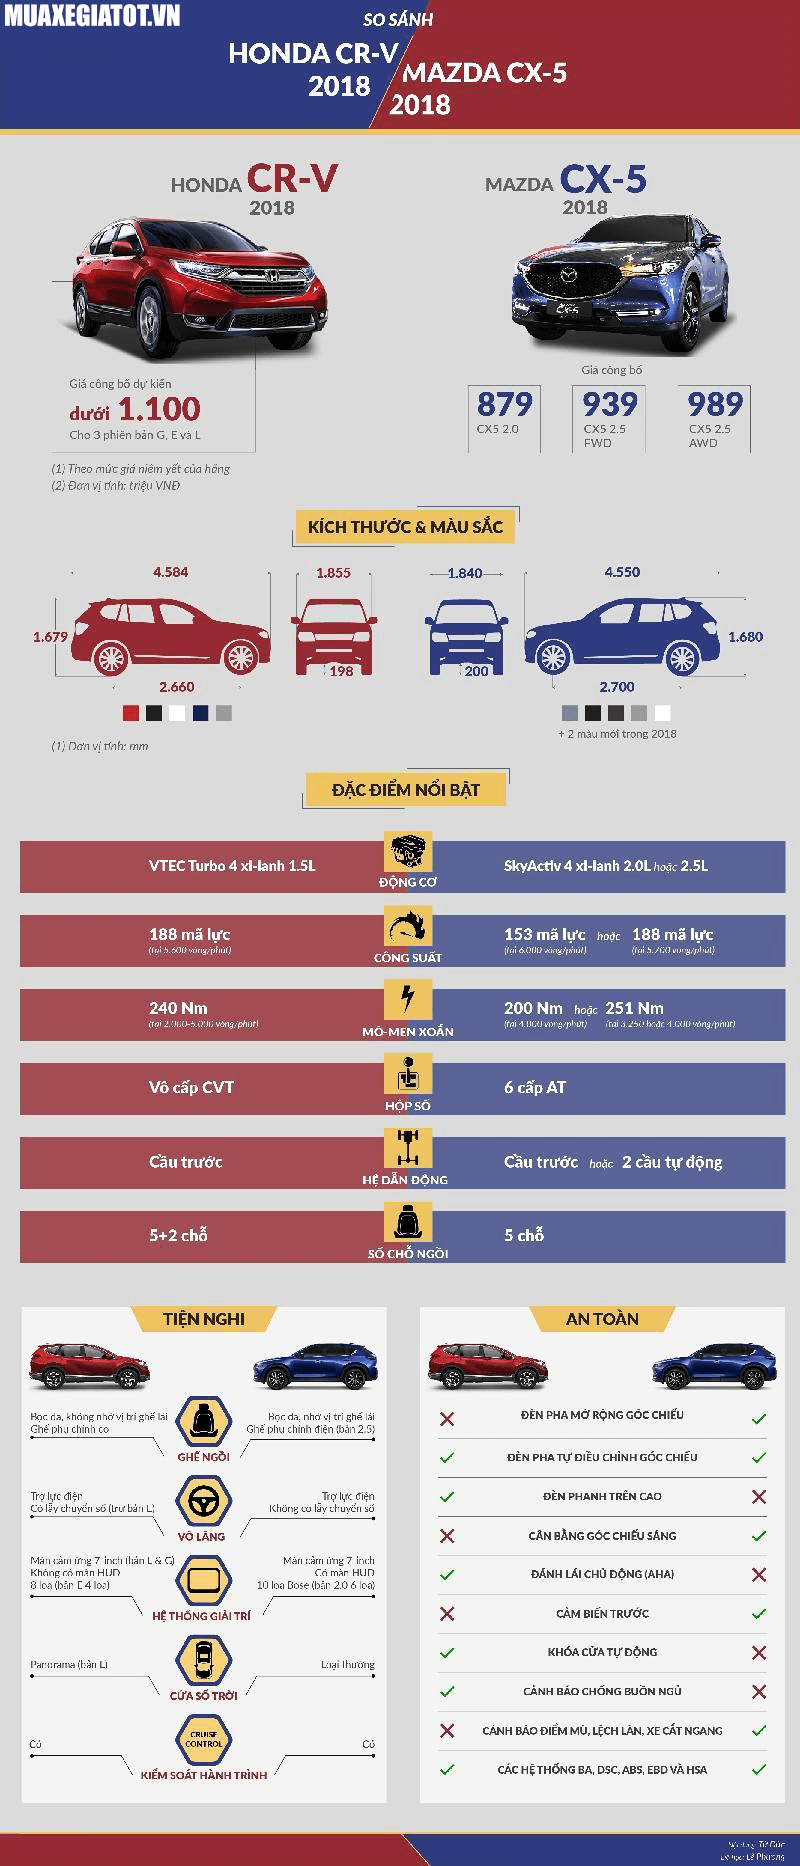 [Infographic] So sánh Mazda CX5 và Honda CRV 2018